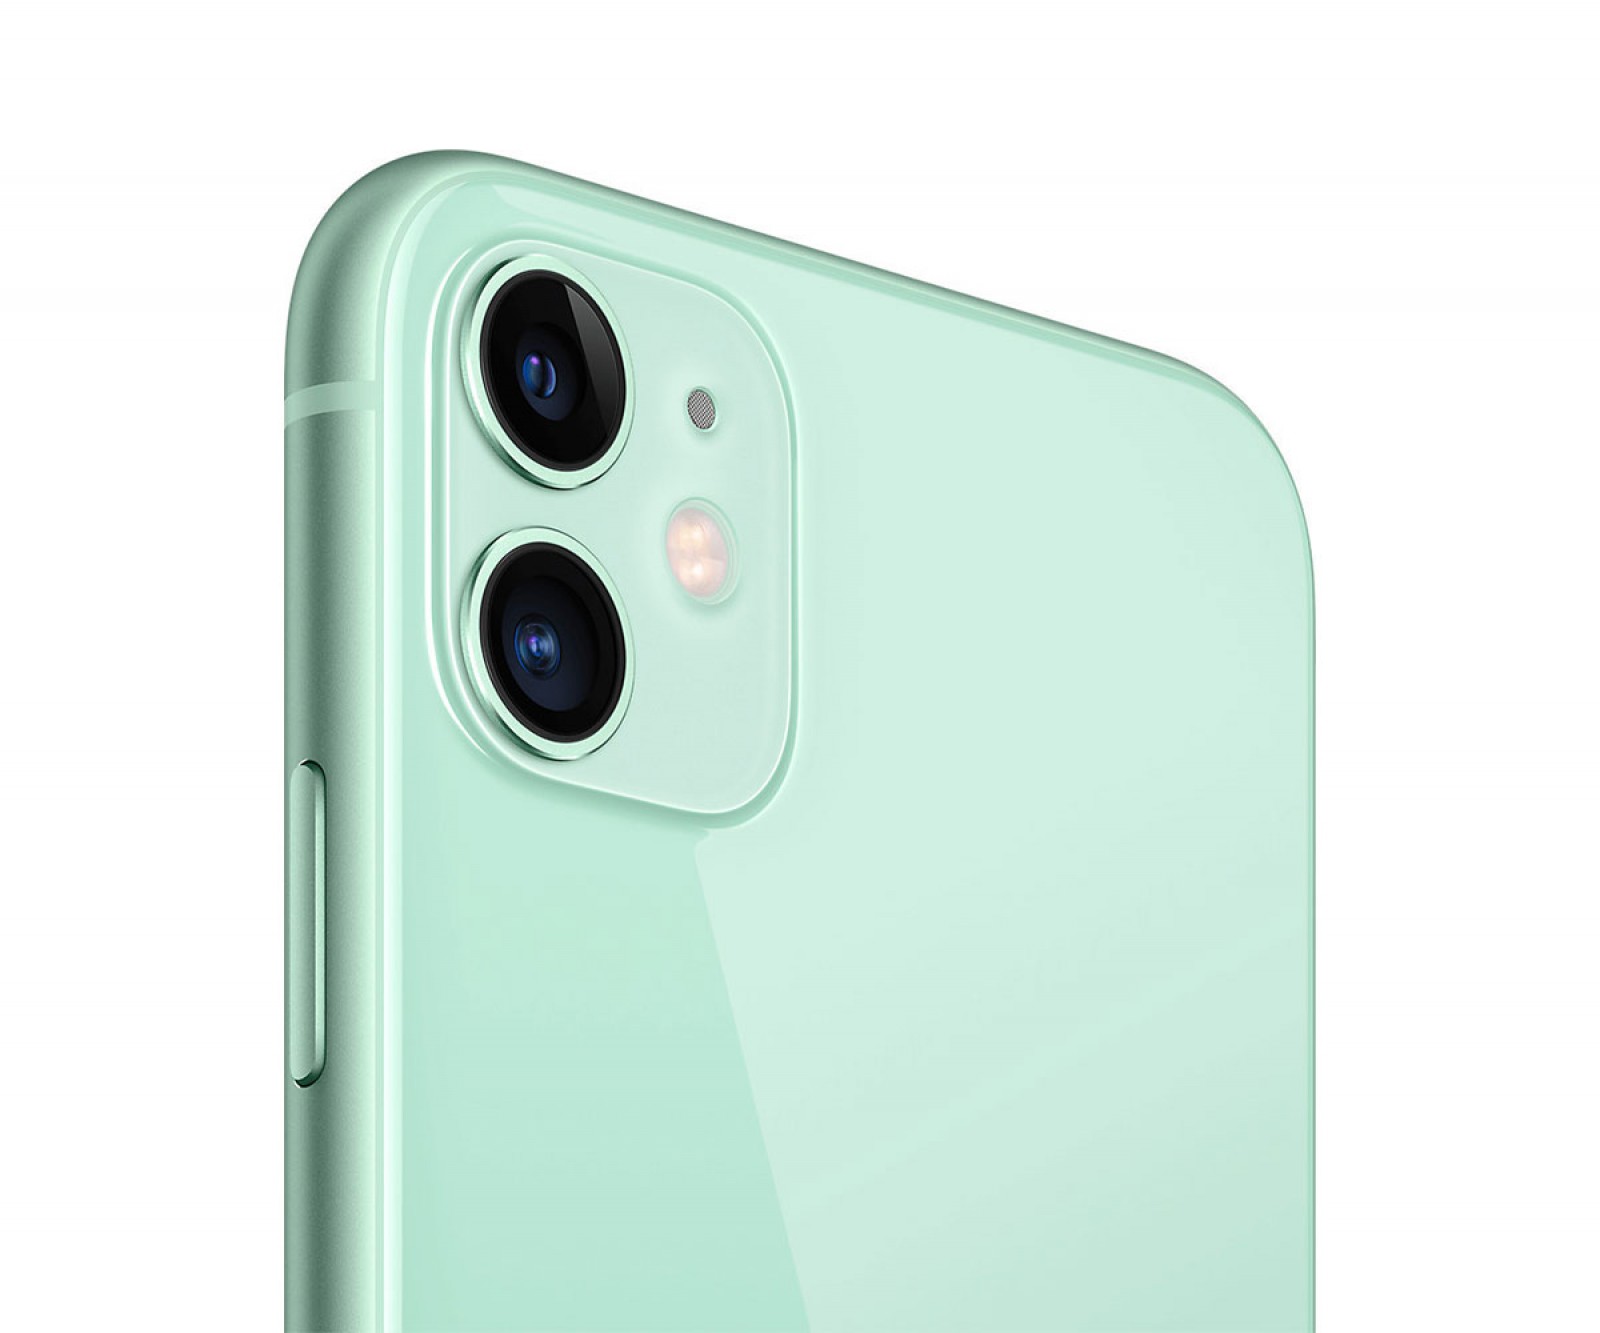 Apple iPhone 11 (64GB) Green